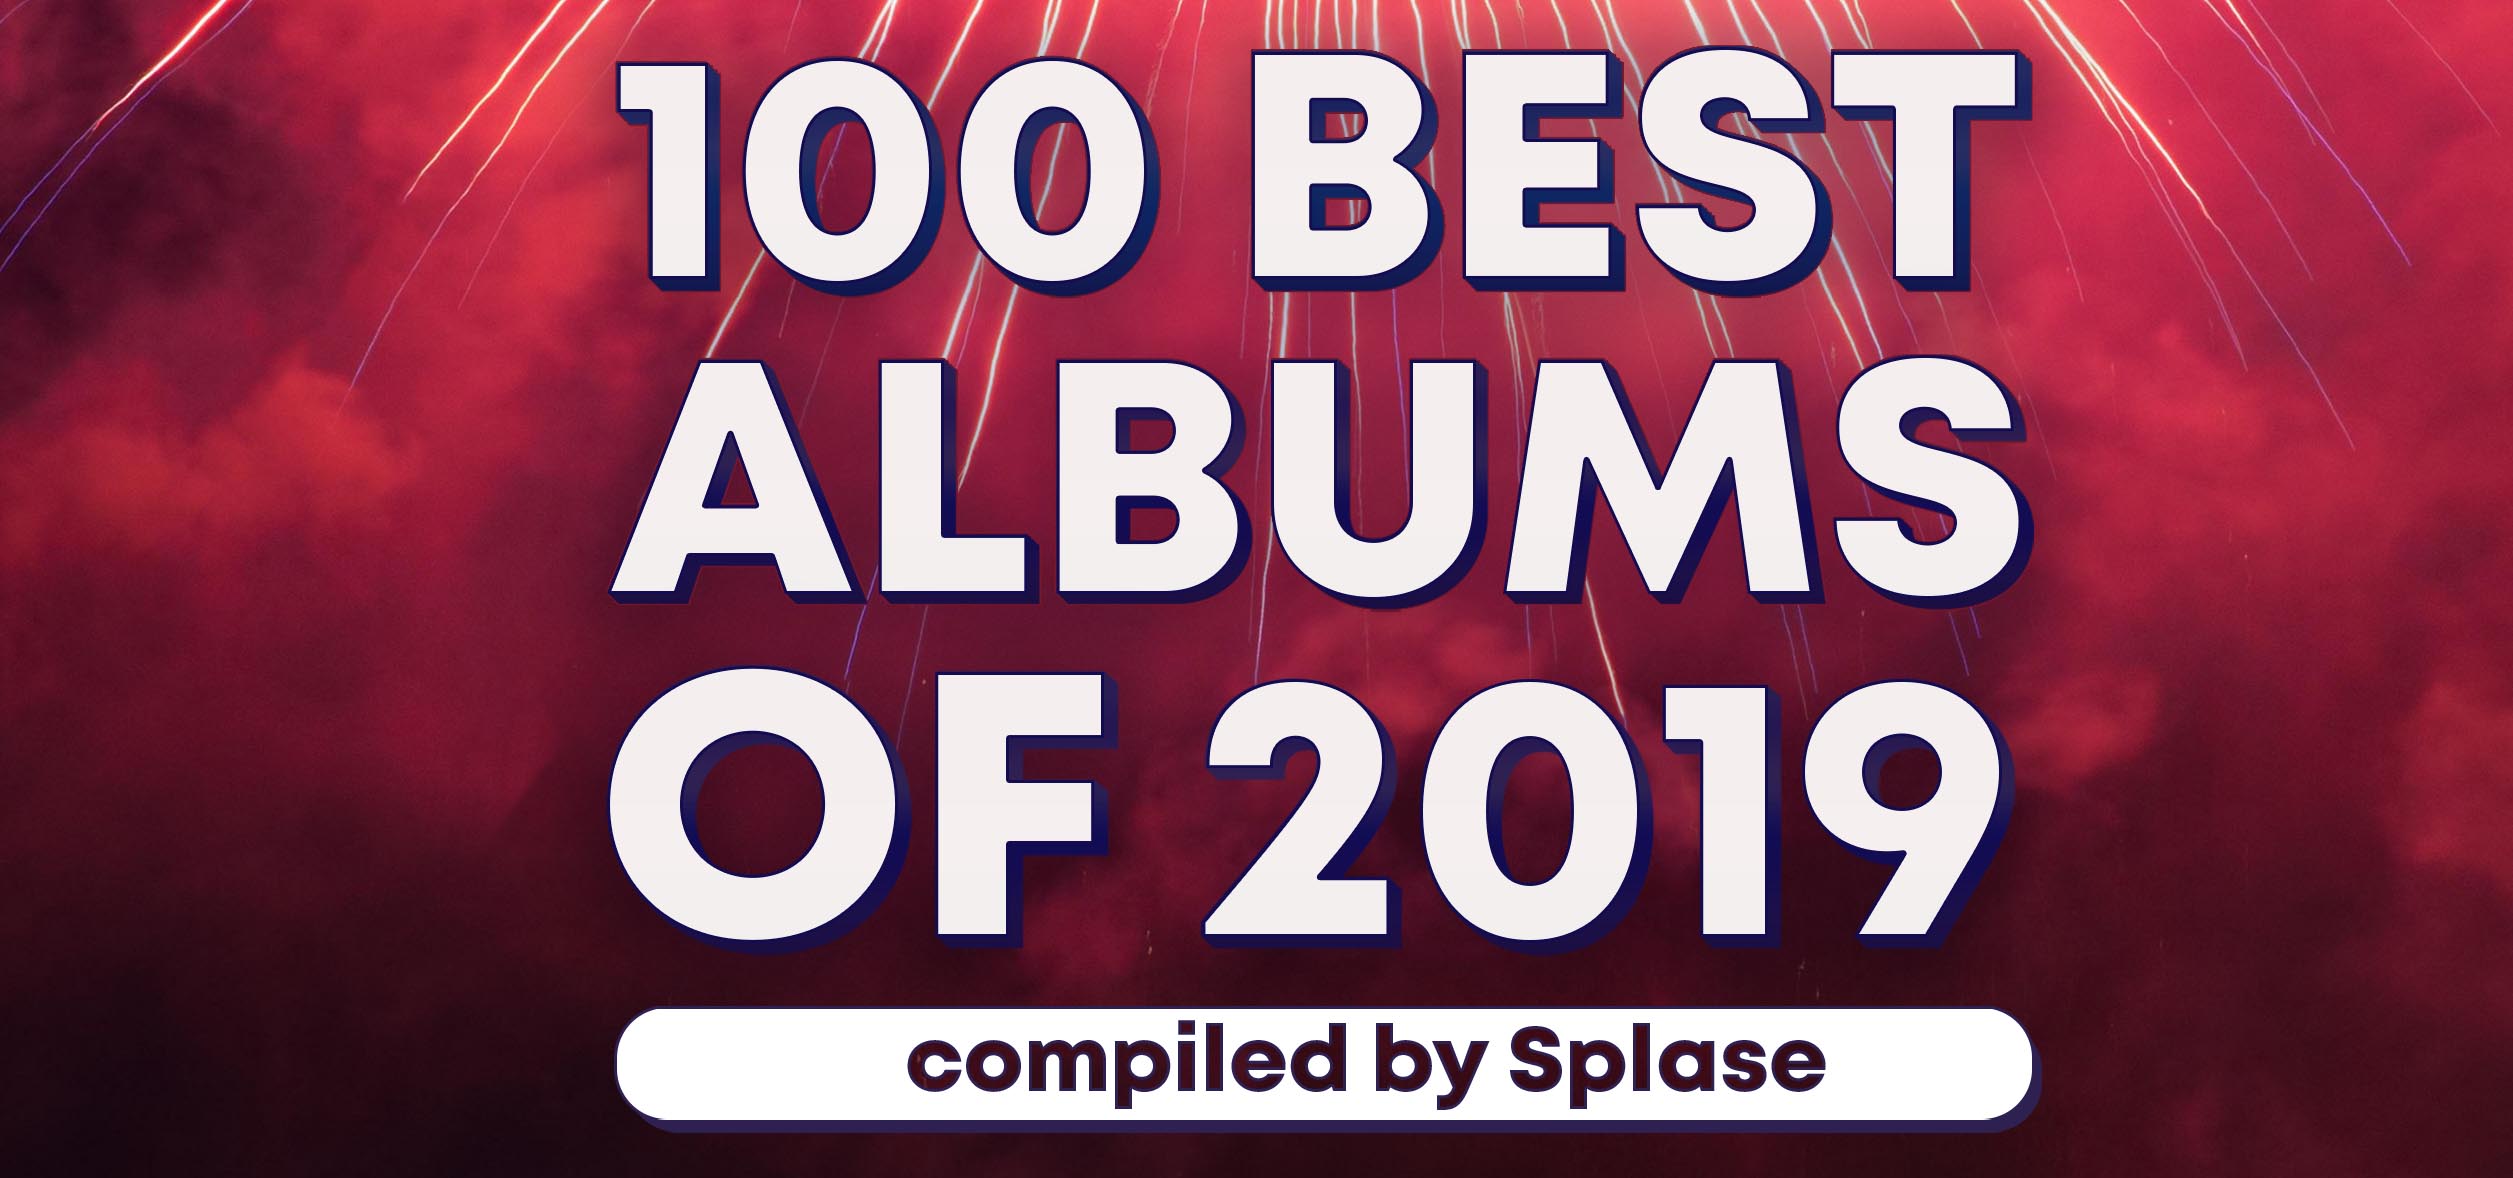 100 Лучших альбомов 2019 года / 100 Best Albums of 2019 by Splase